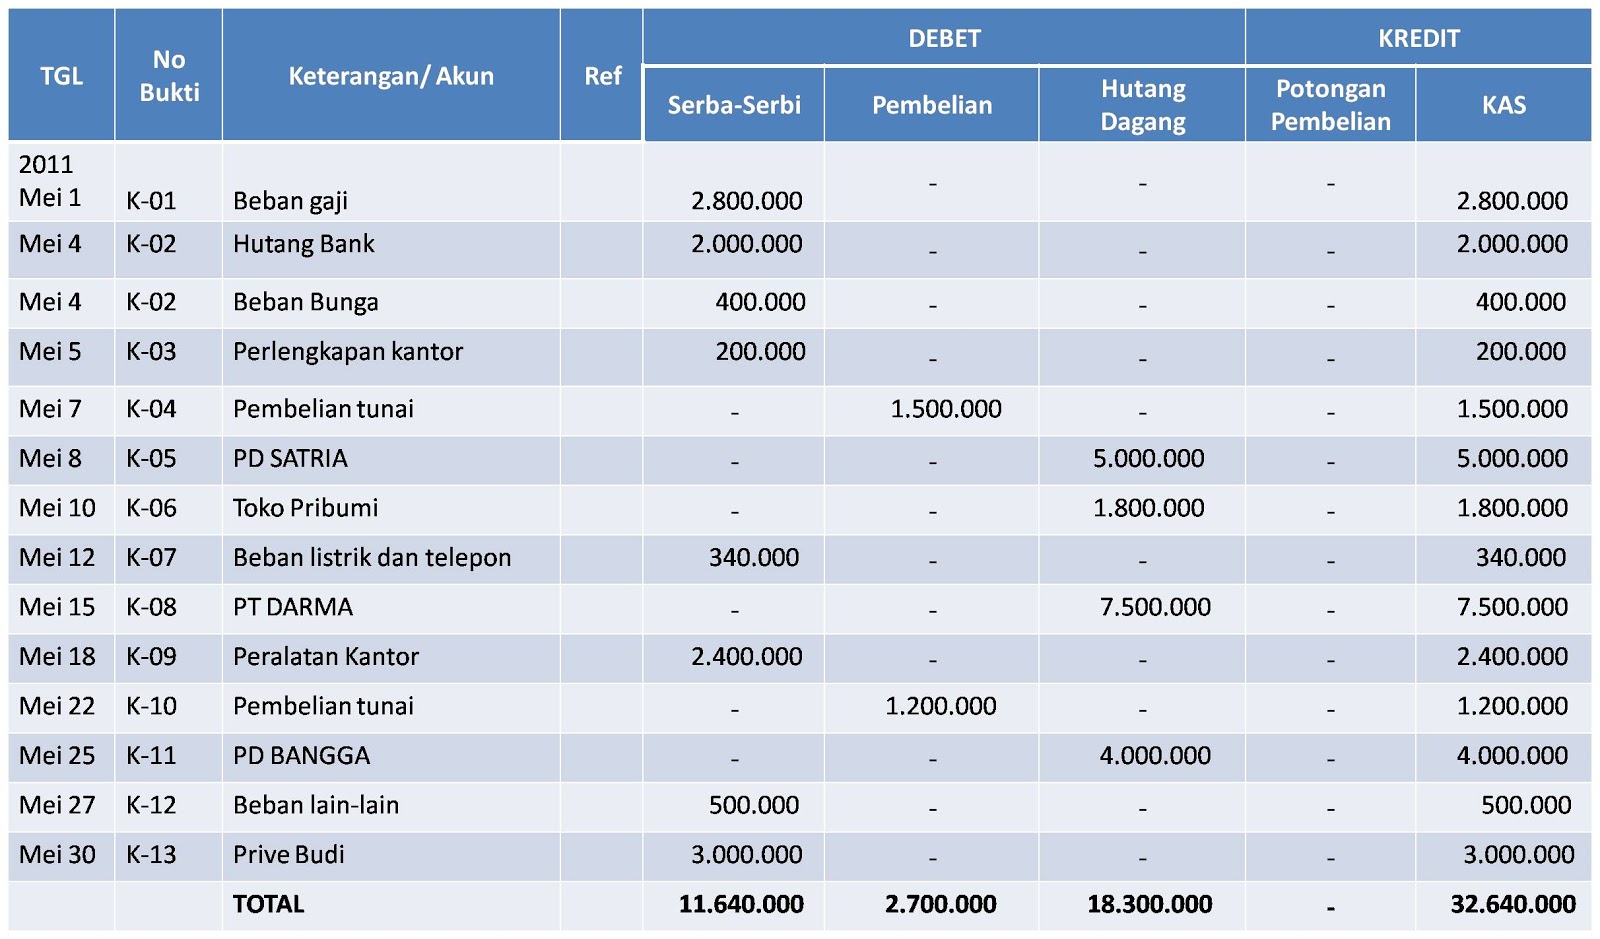 Mei 30, Pengeluaran sebilai Rp3.000.000 untuk keperluan pribadi Budi ...